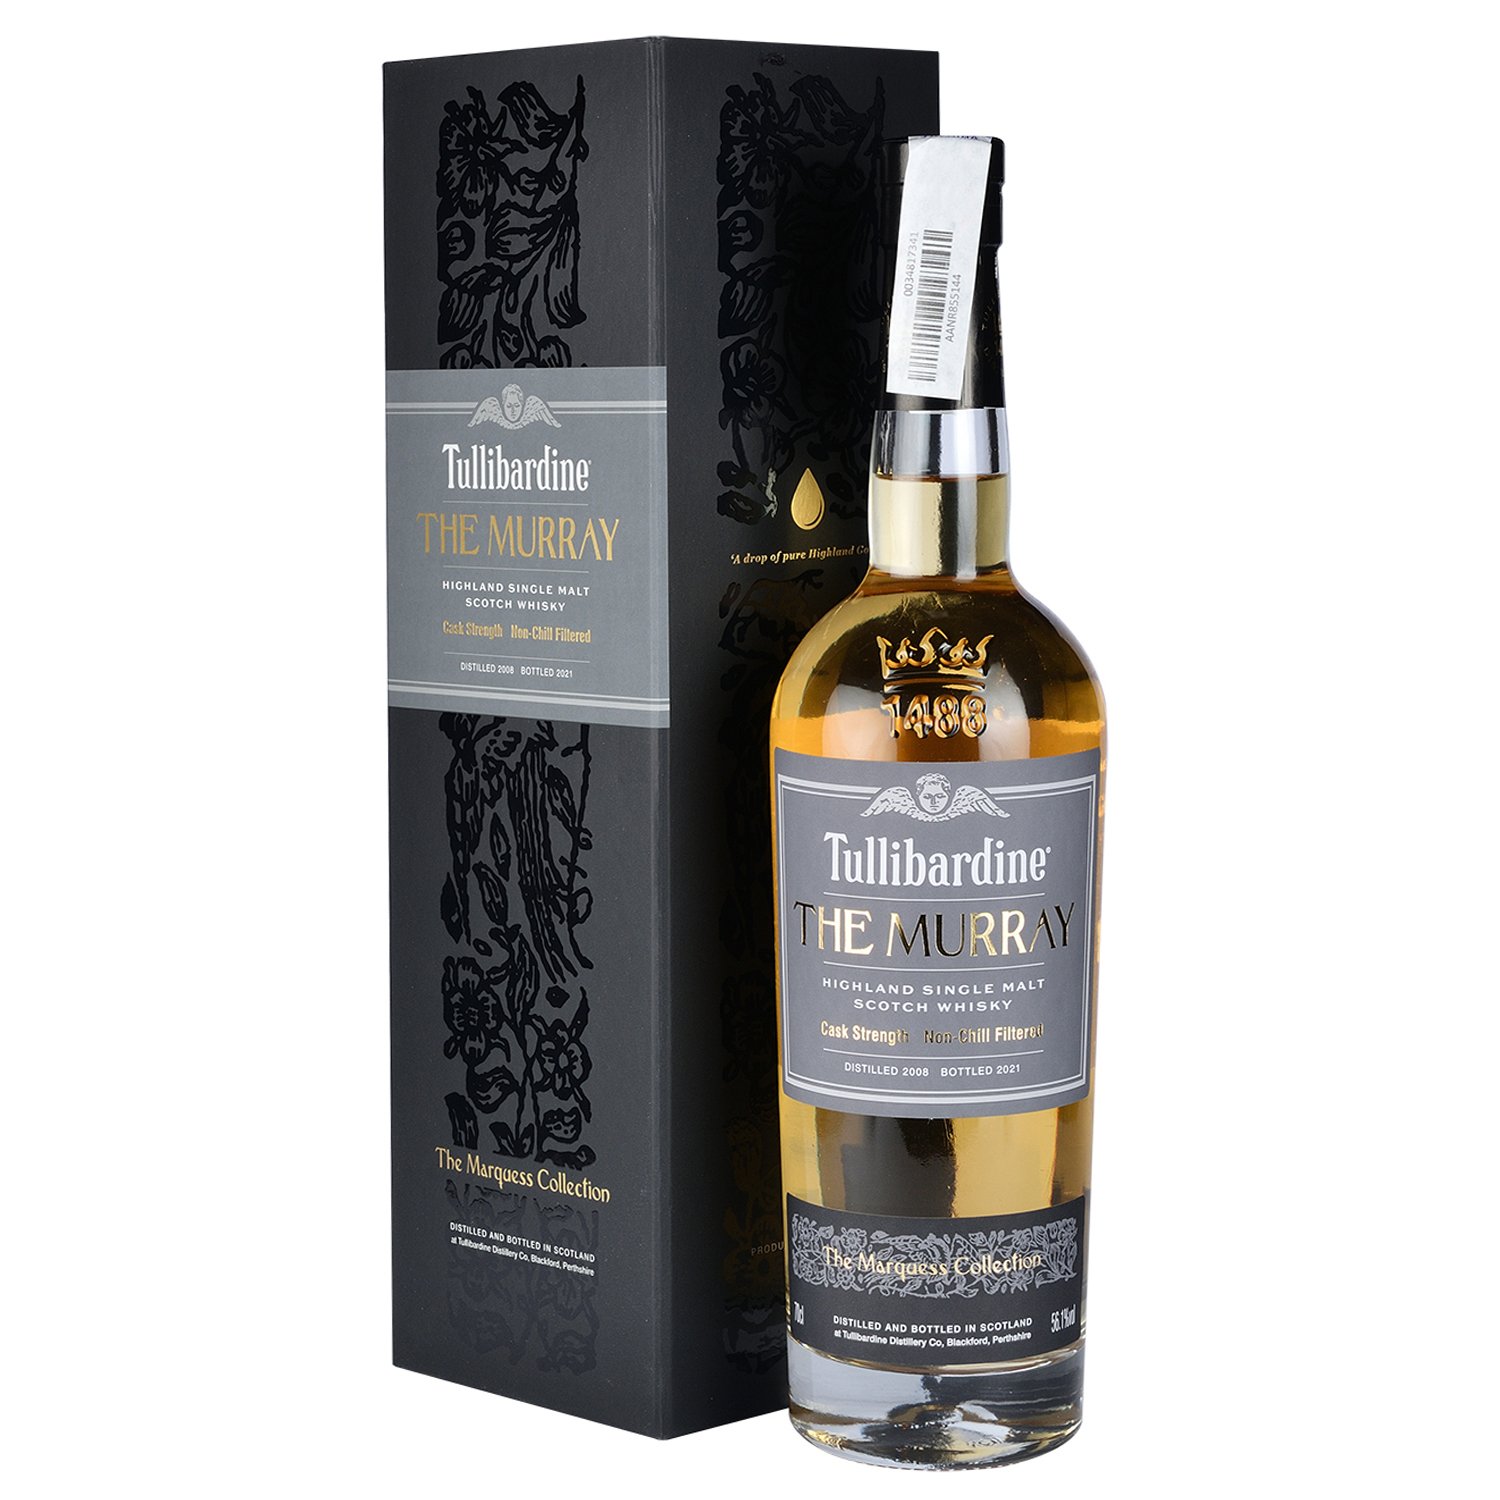 Віскі Tullibardine The Murray Single Malt Scotch Whisky 2008 56.1% 0.7 л у подарунковій упаковці - фото 1